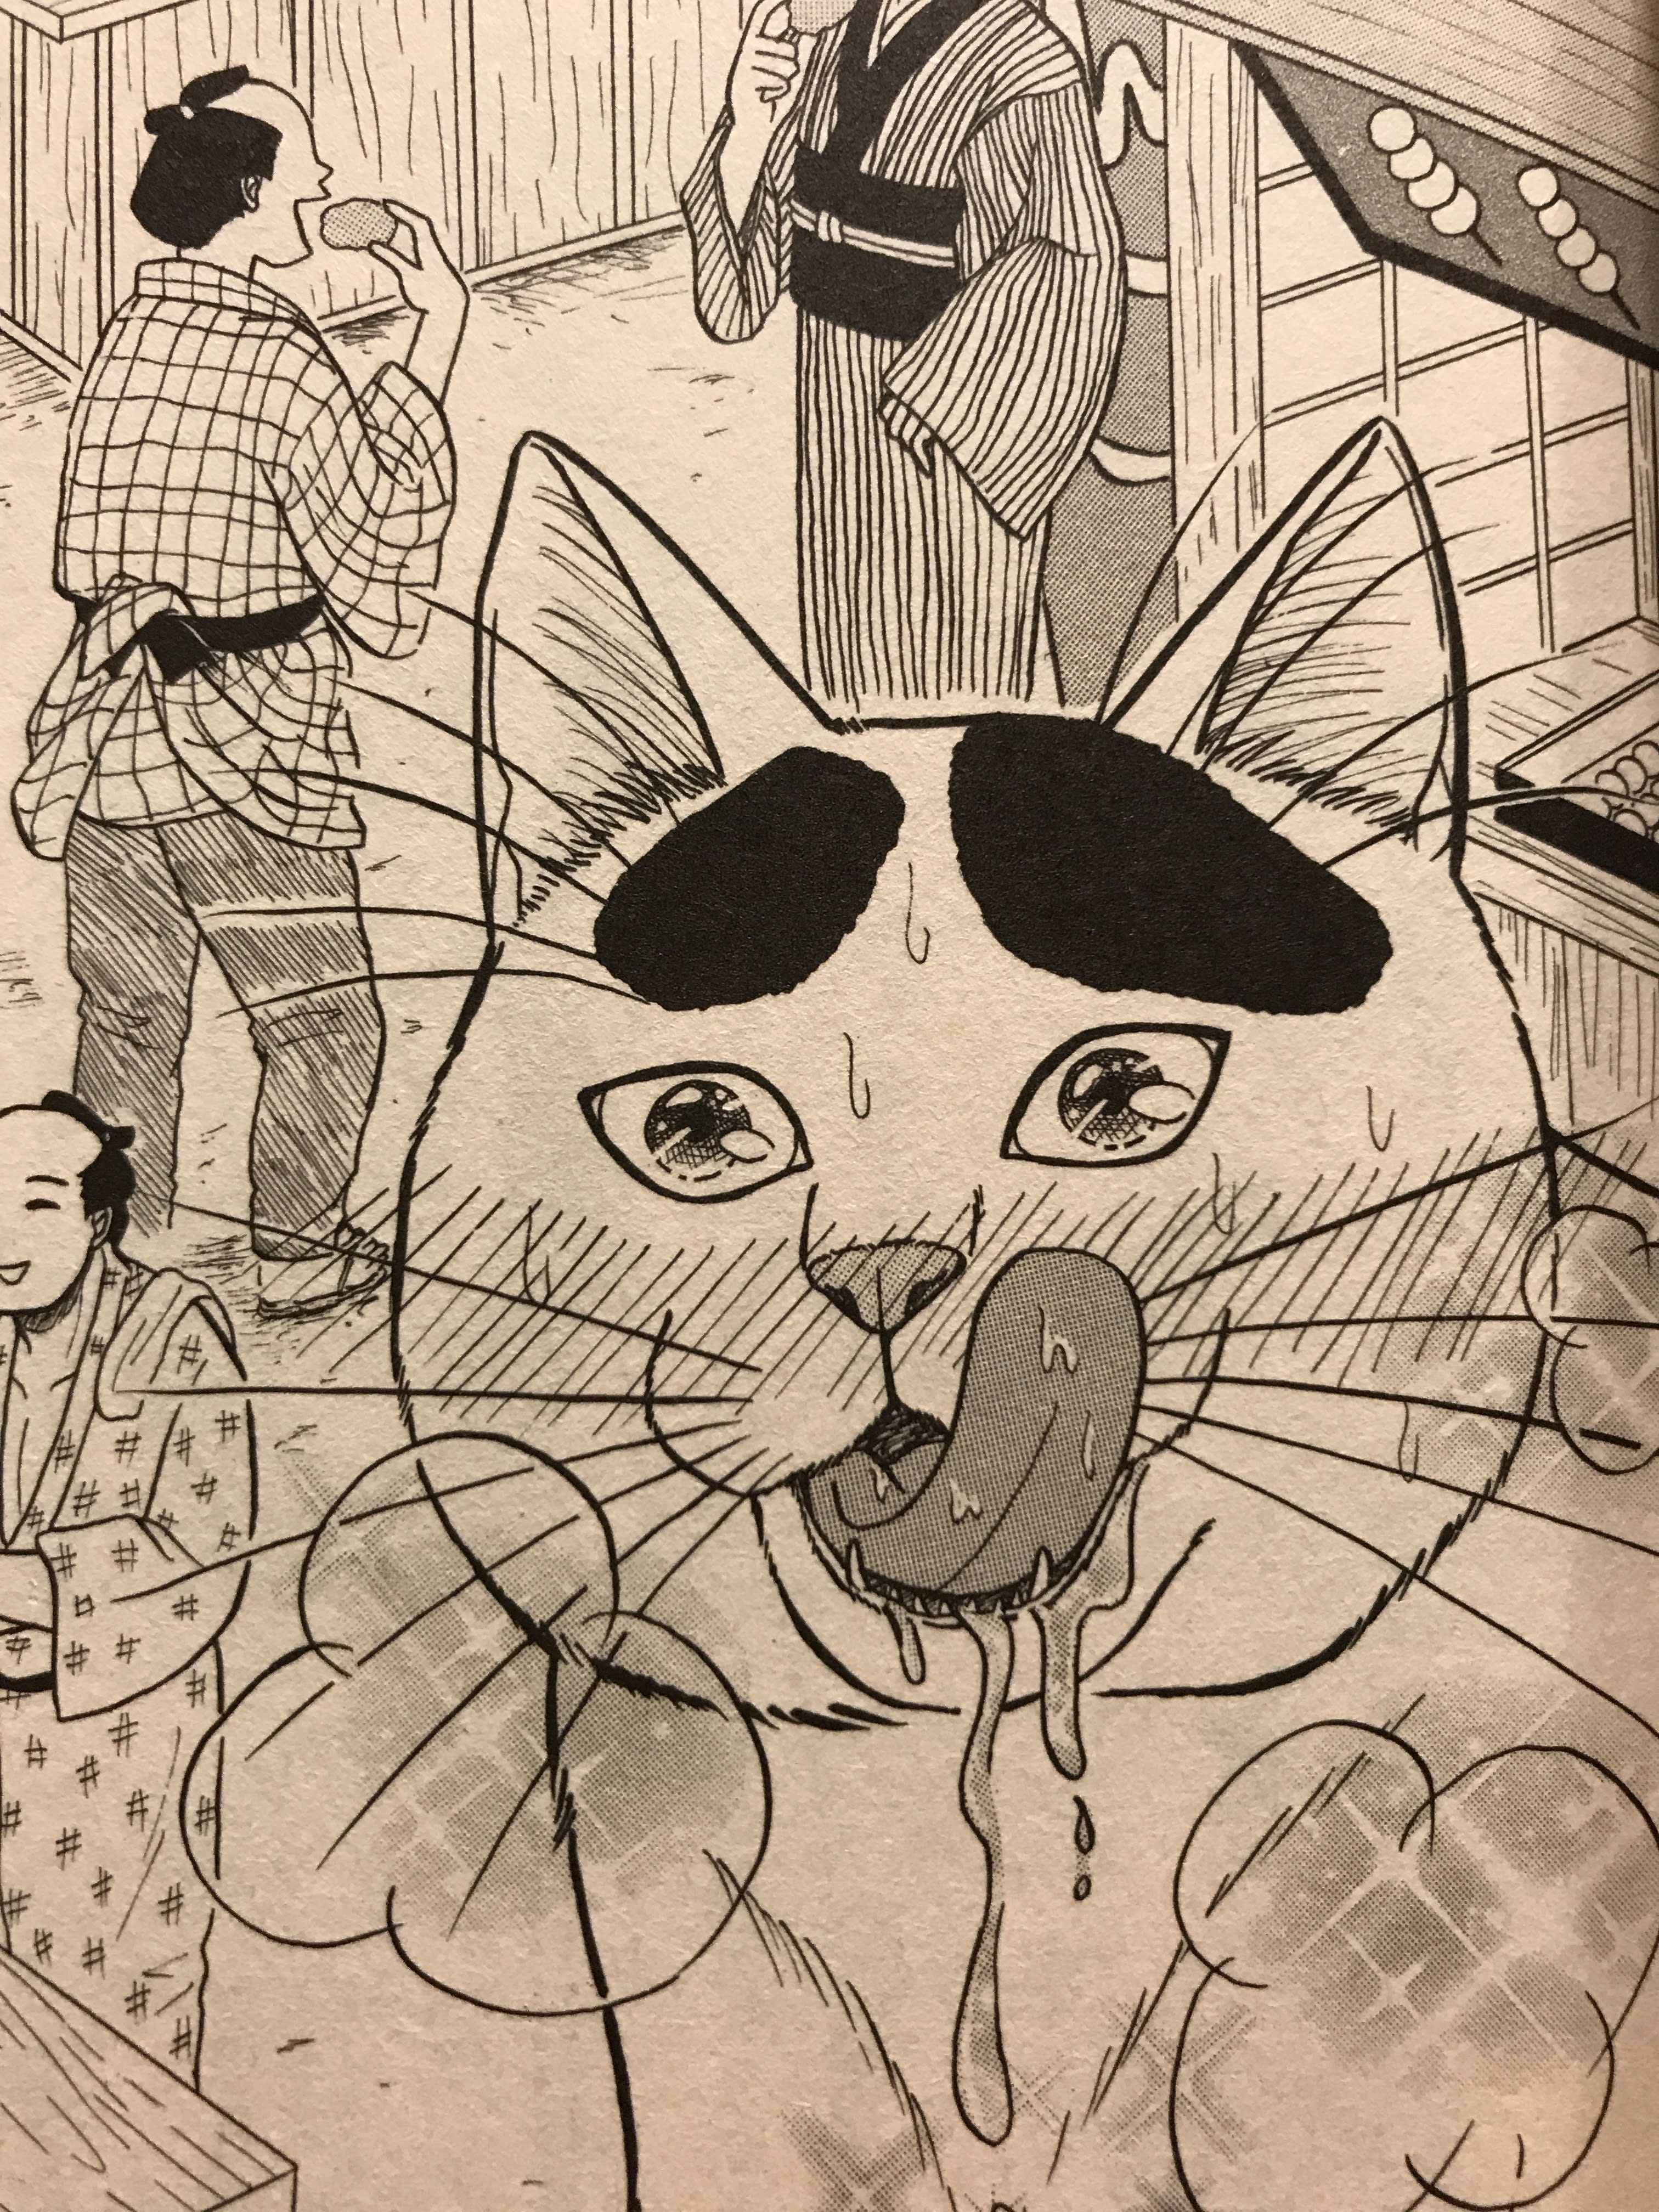 めしねこ 大江戸食楽猫物語 感想 ごんぶと眉毛のネコが飯を食う マンバ